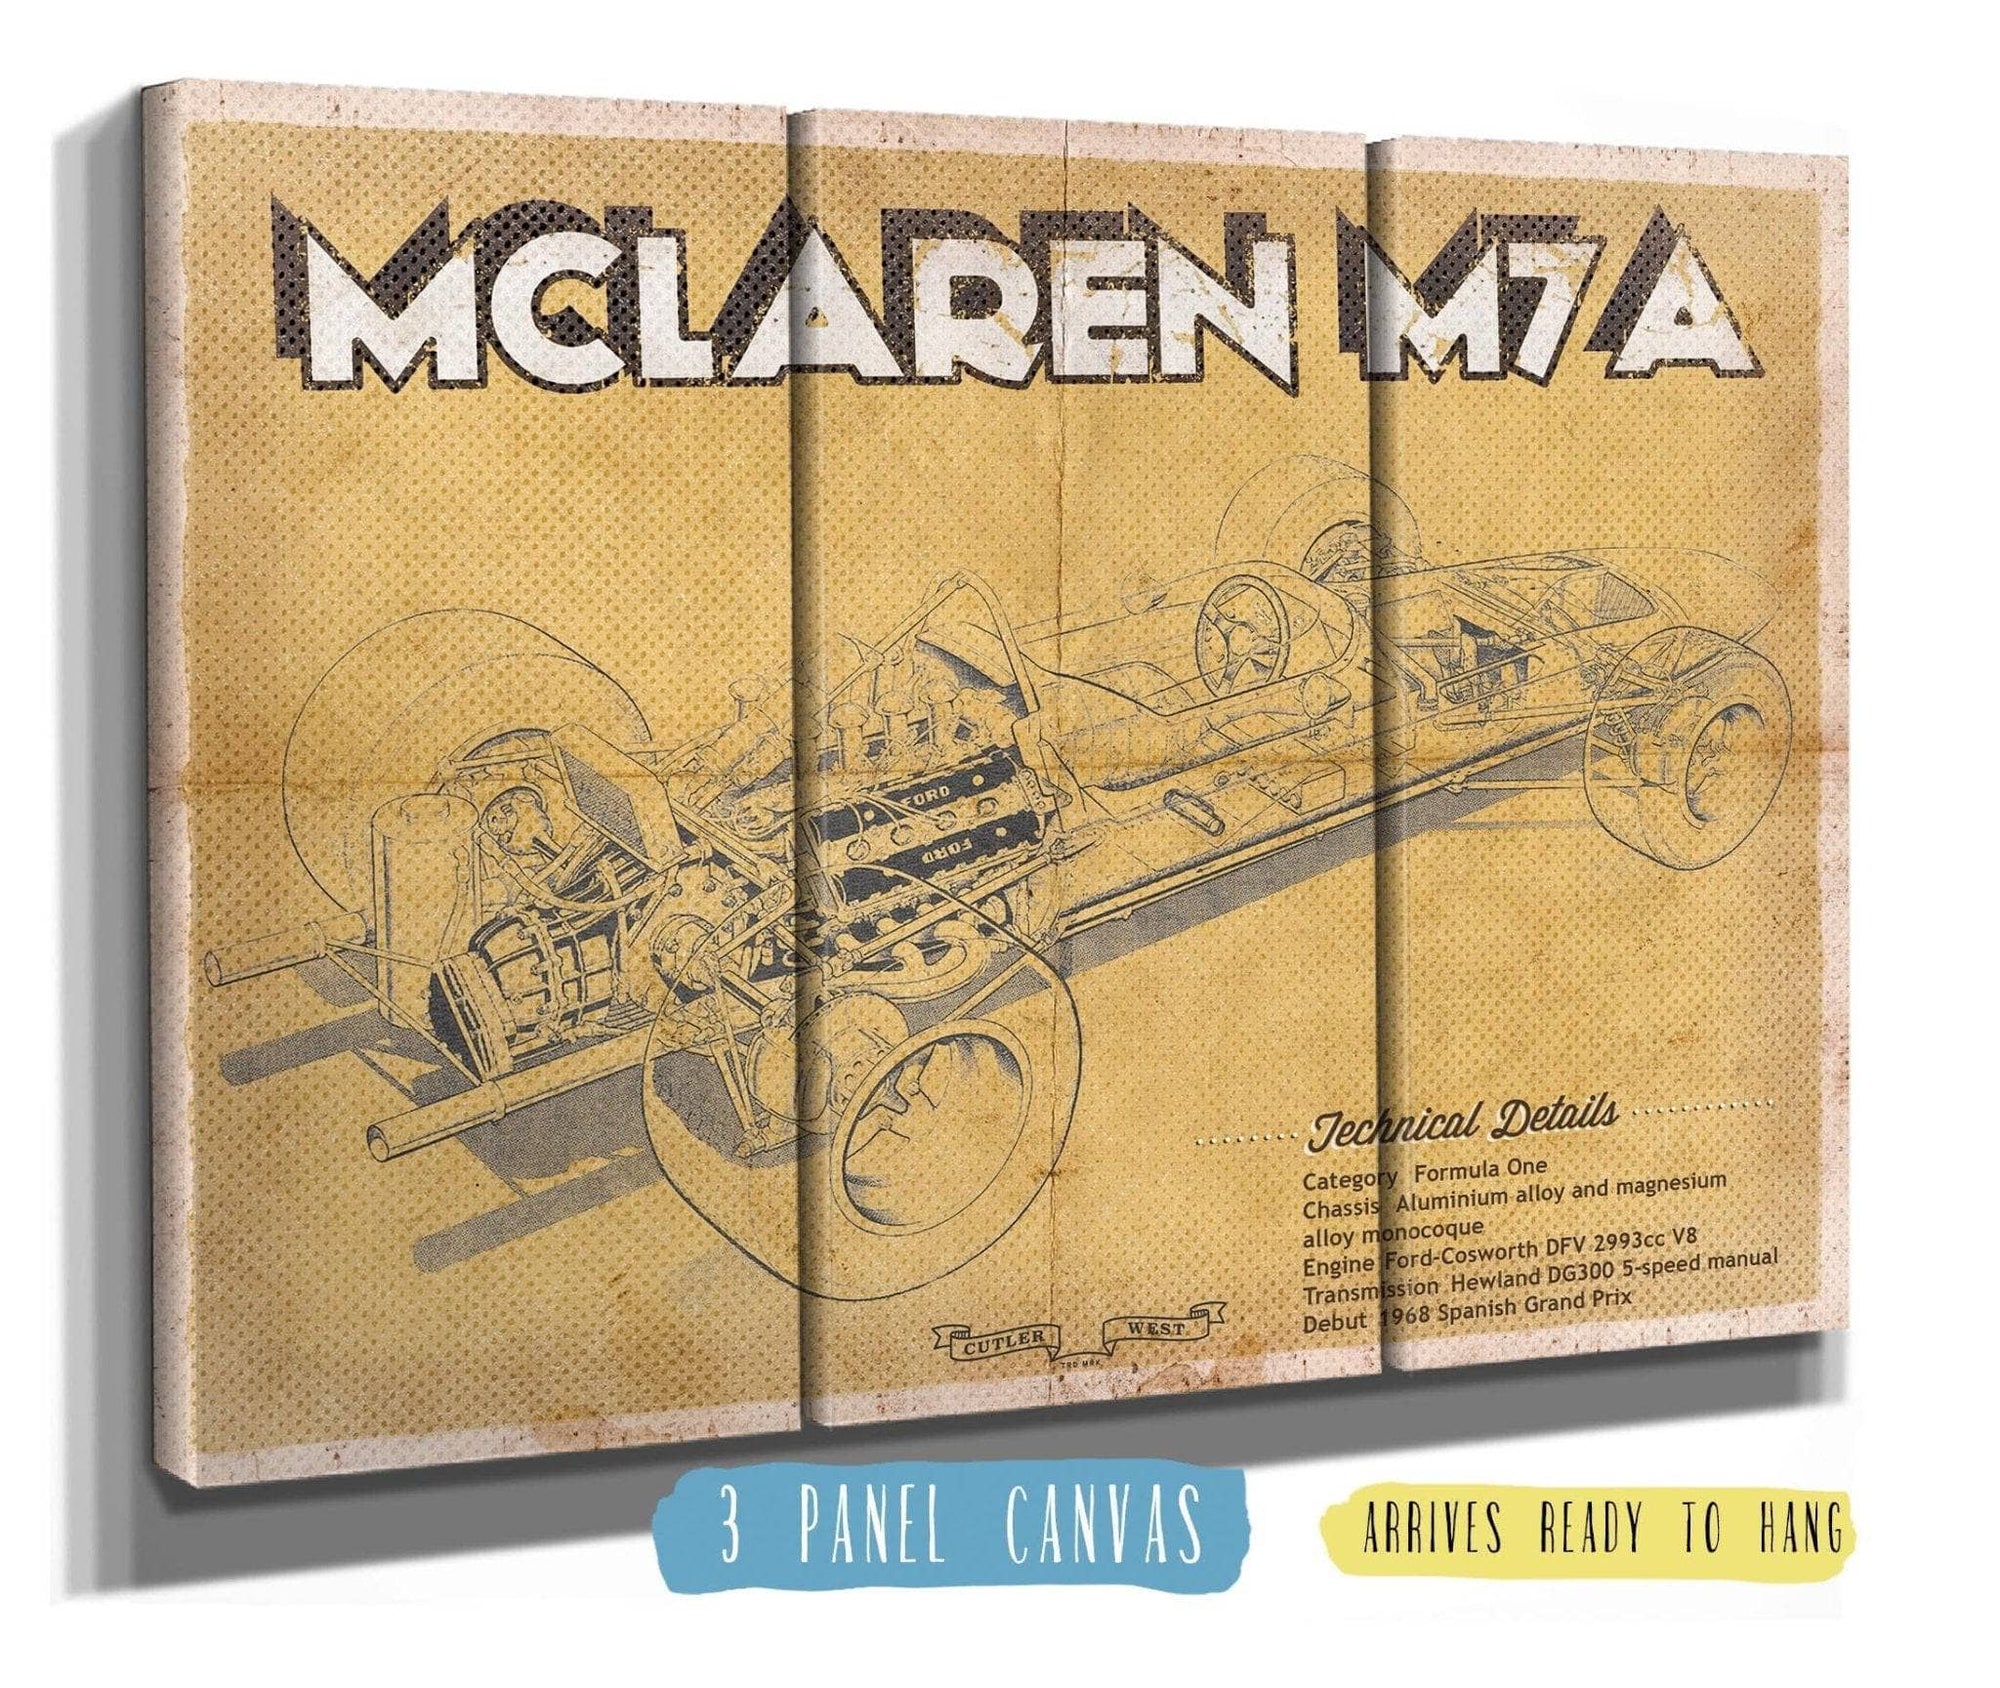 Cutler West Vehicle Collection Vintage Mclaren M7a Formula One Race Car Print